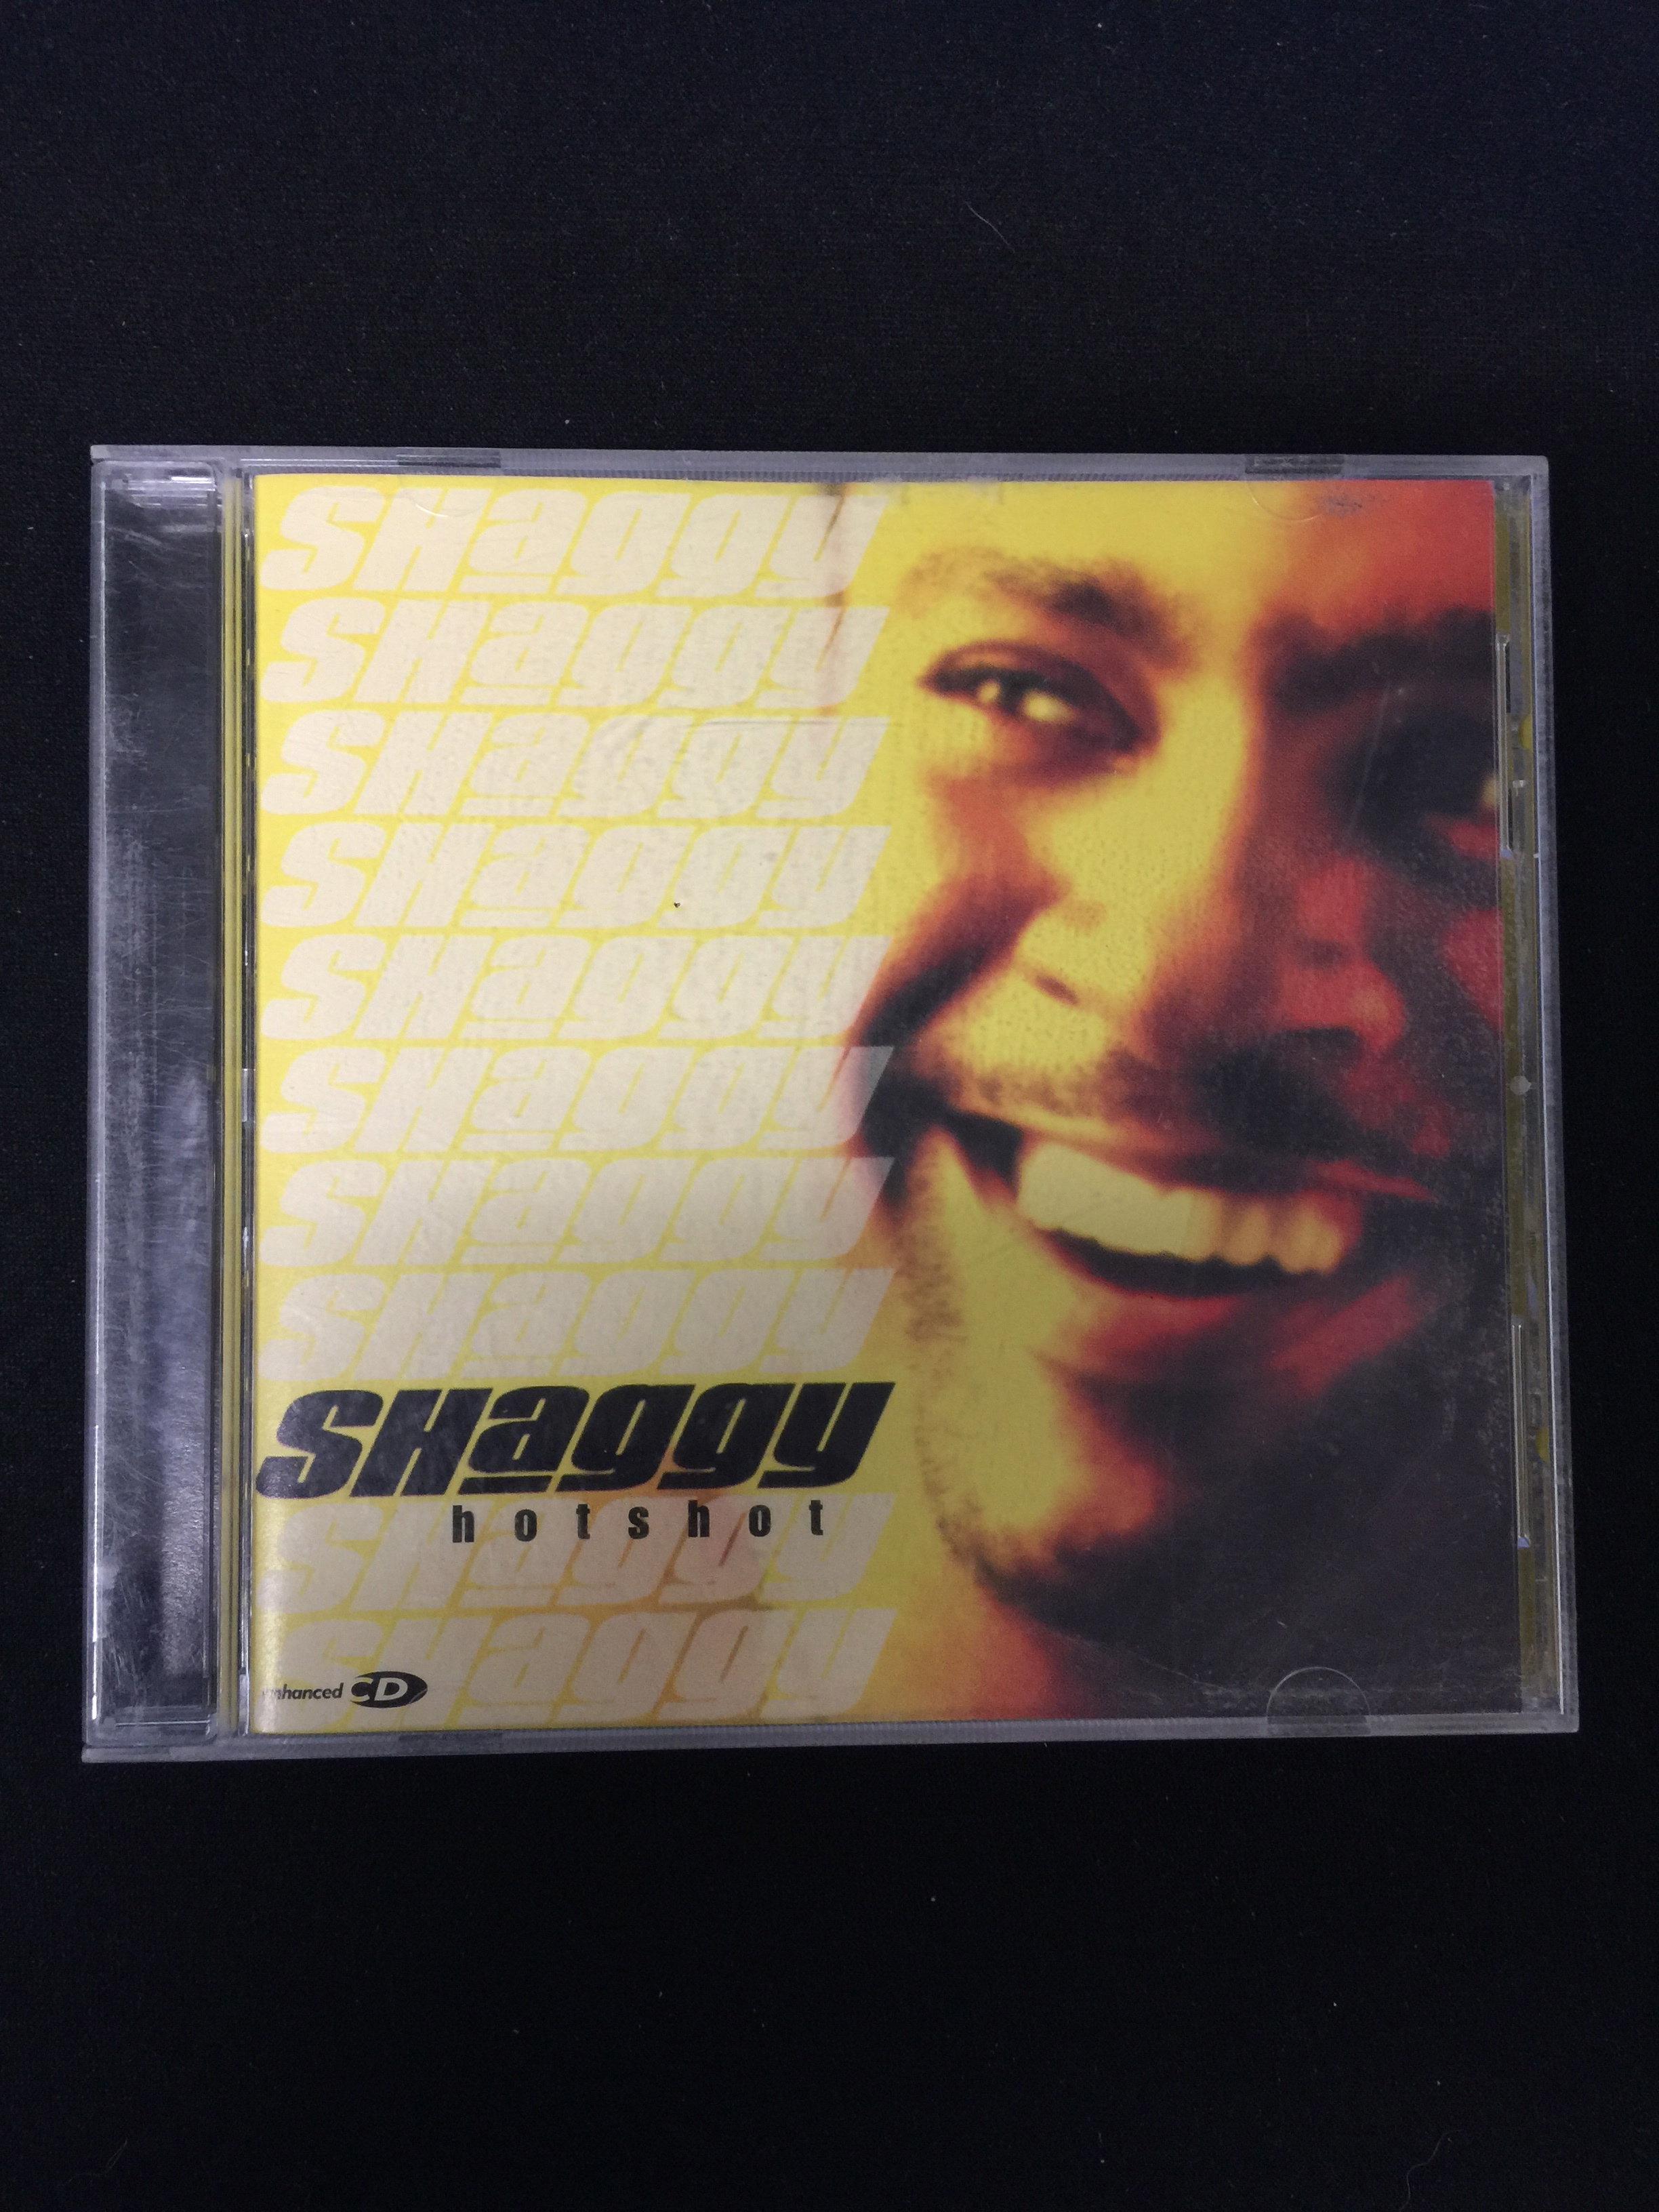 Shaggy-Hotshot CD